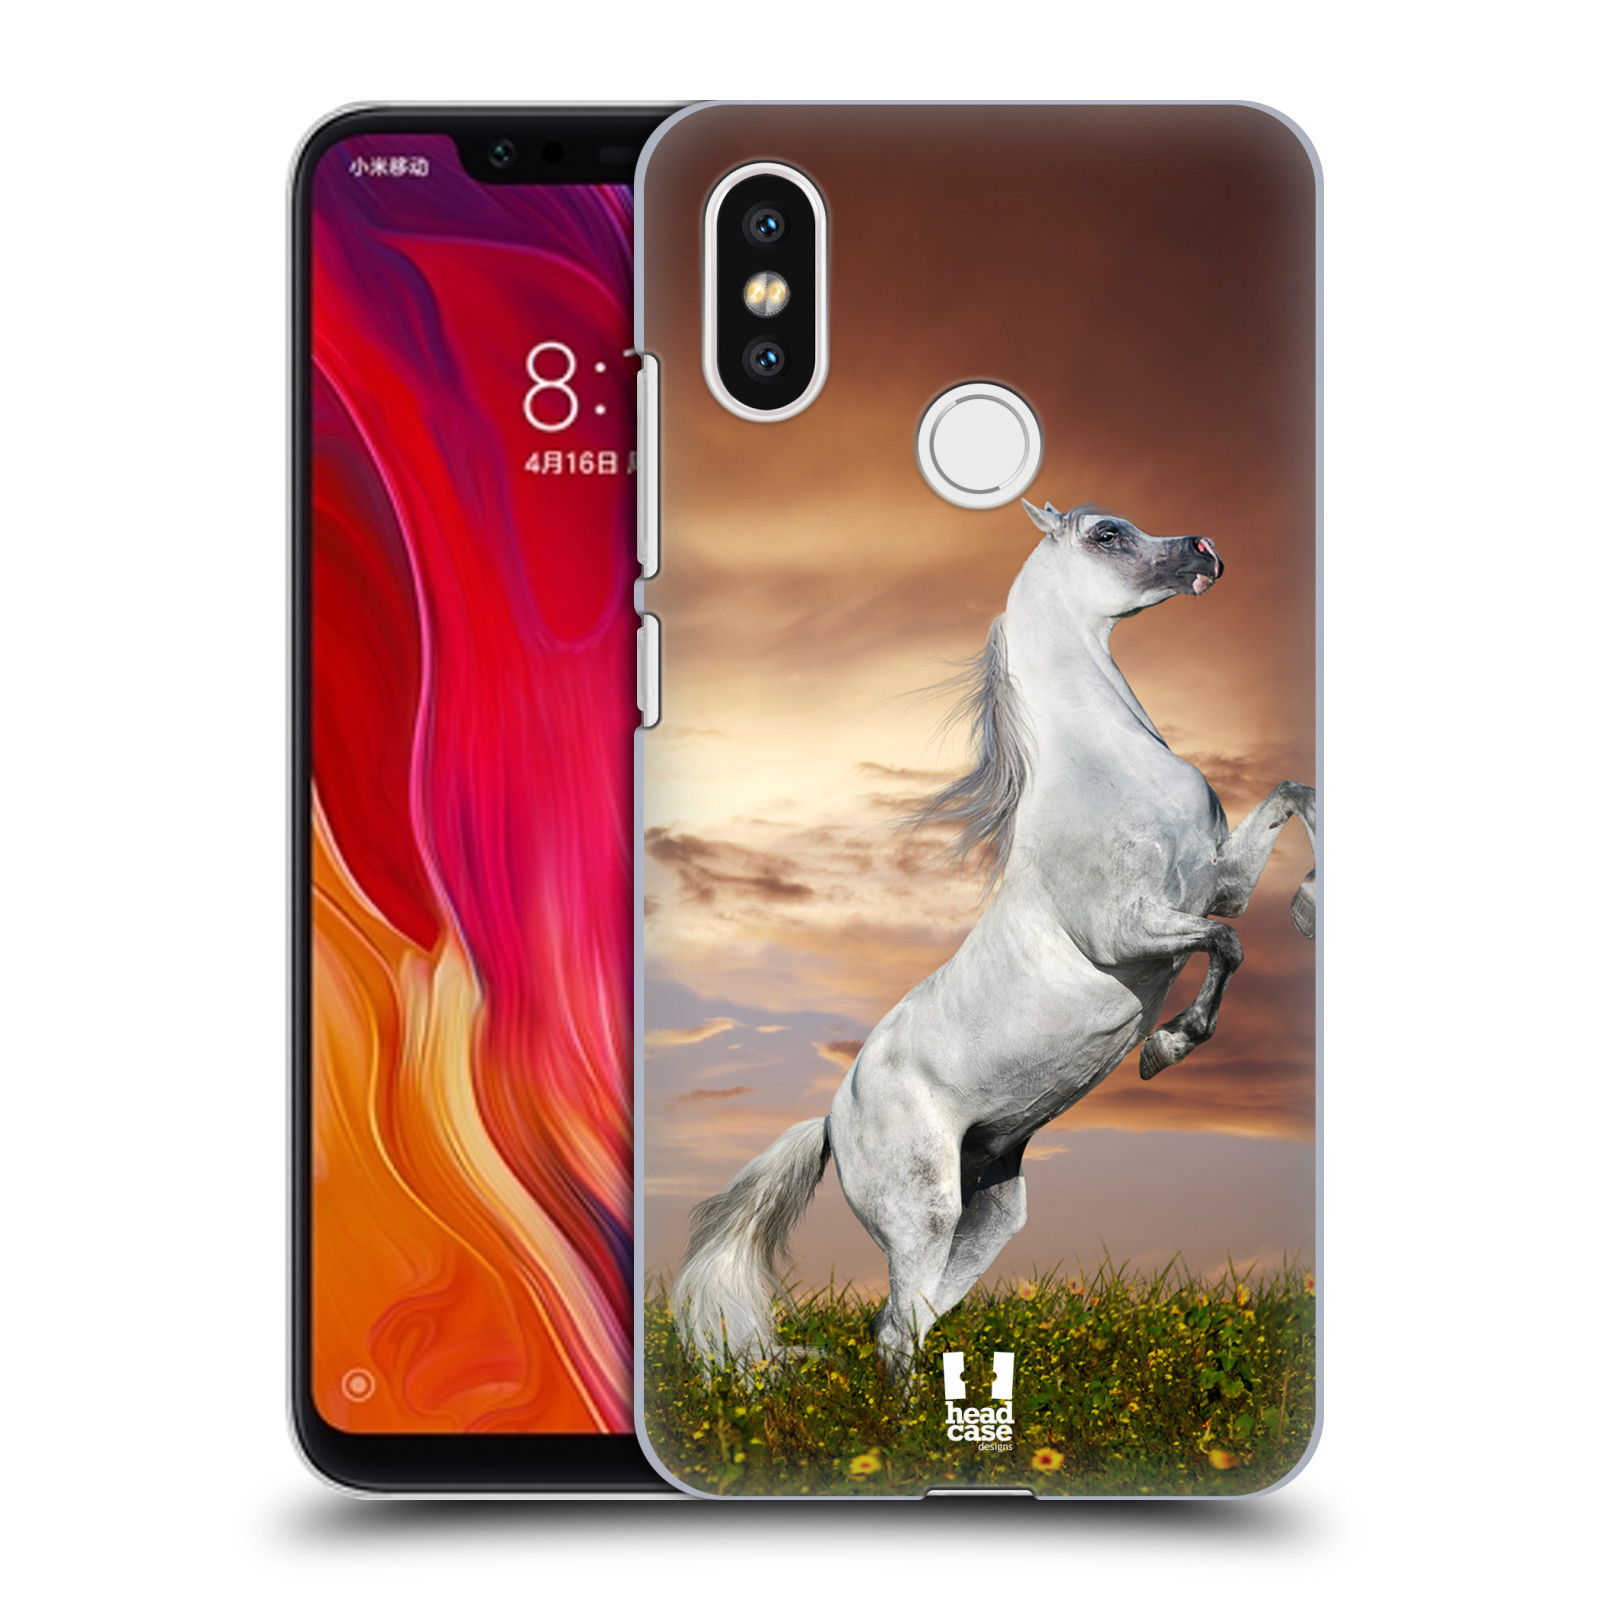 Zadní obal pro mobil Xiaomi Mi 8 - HEAD CASE - Svět zvířat divoký kůň